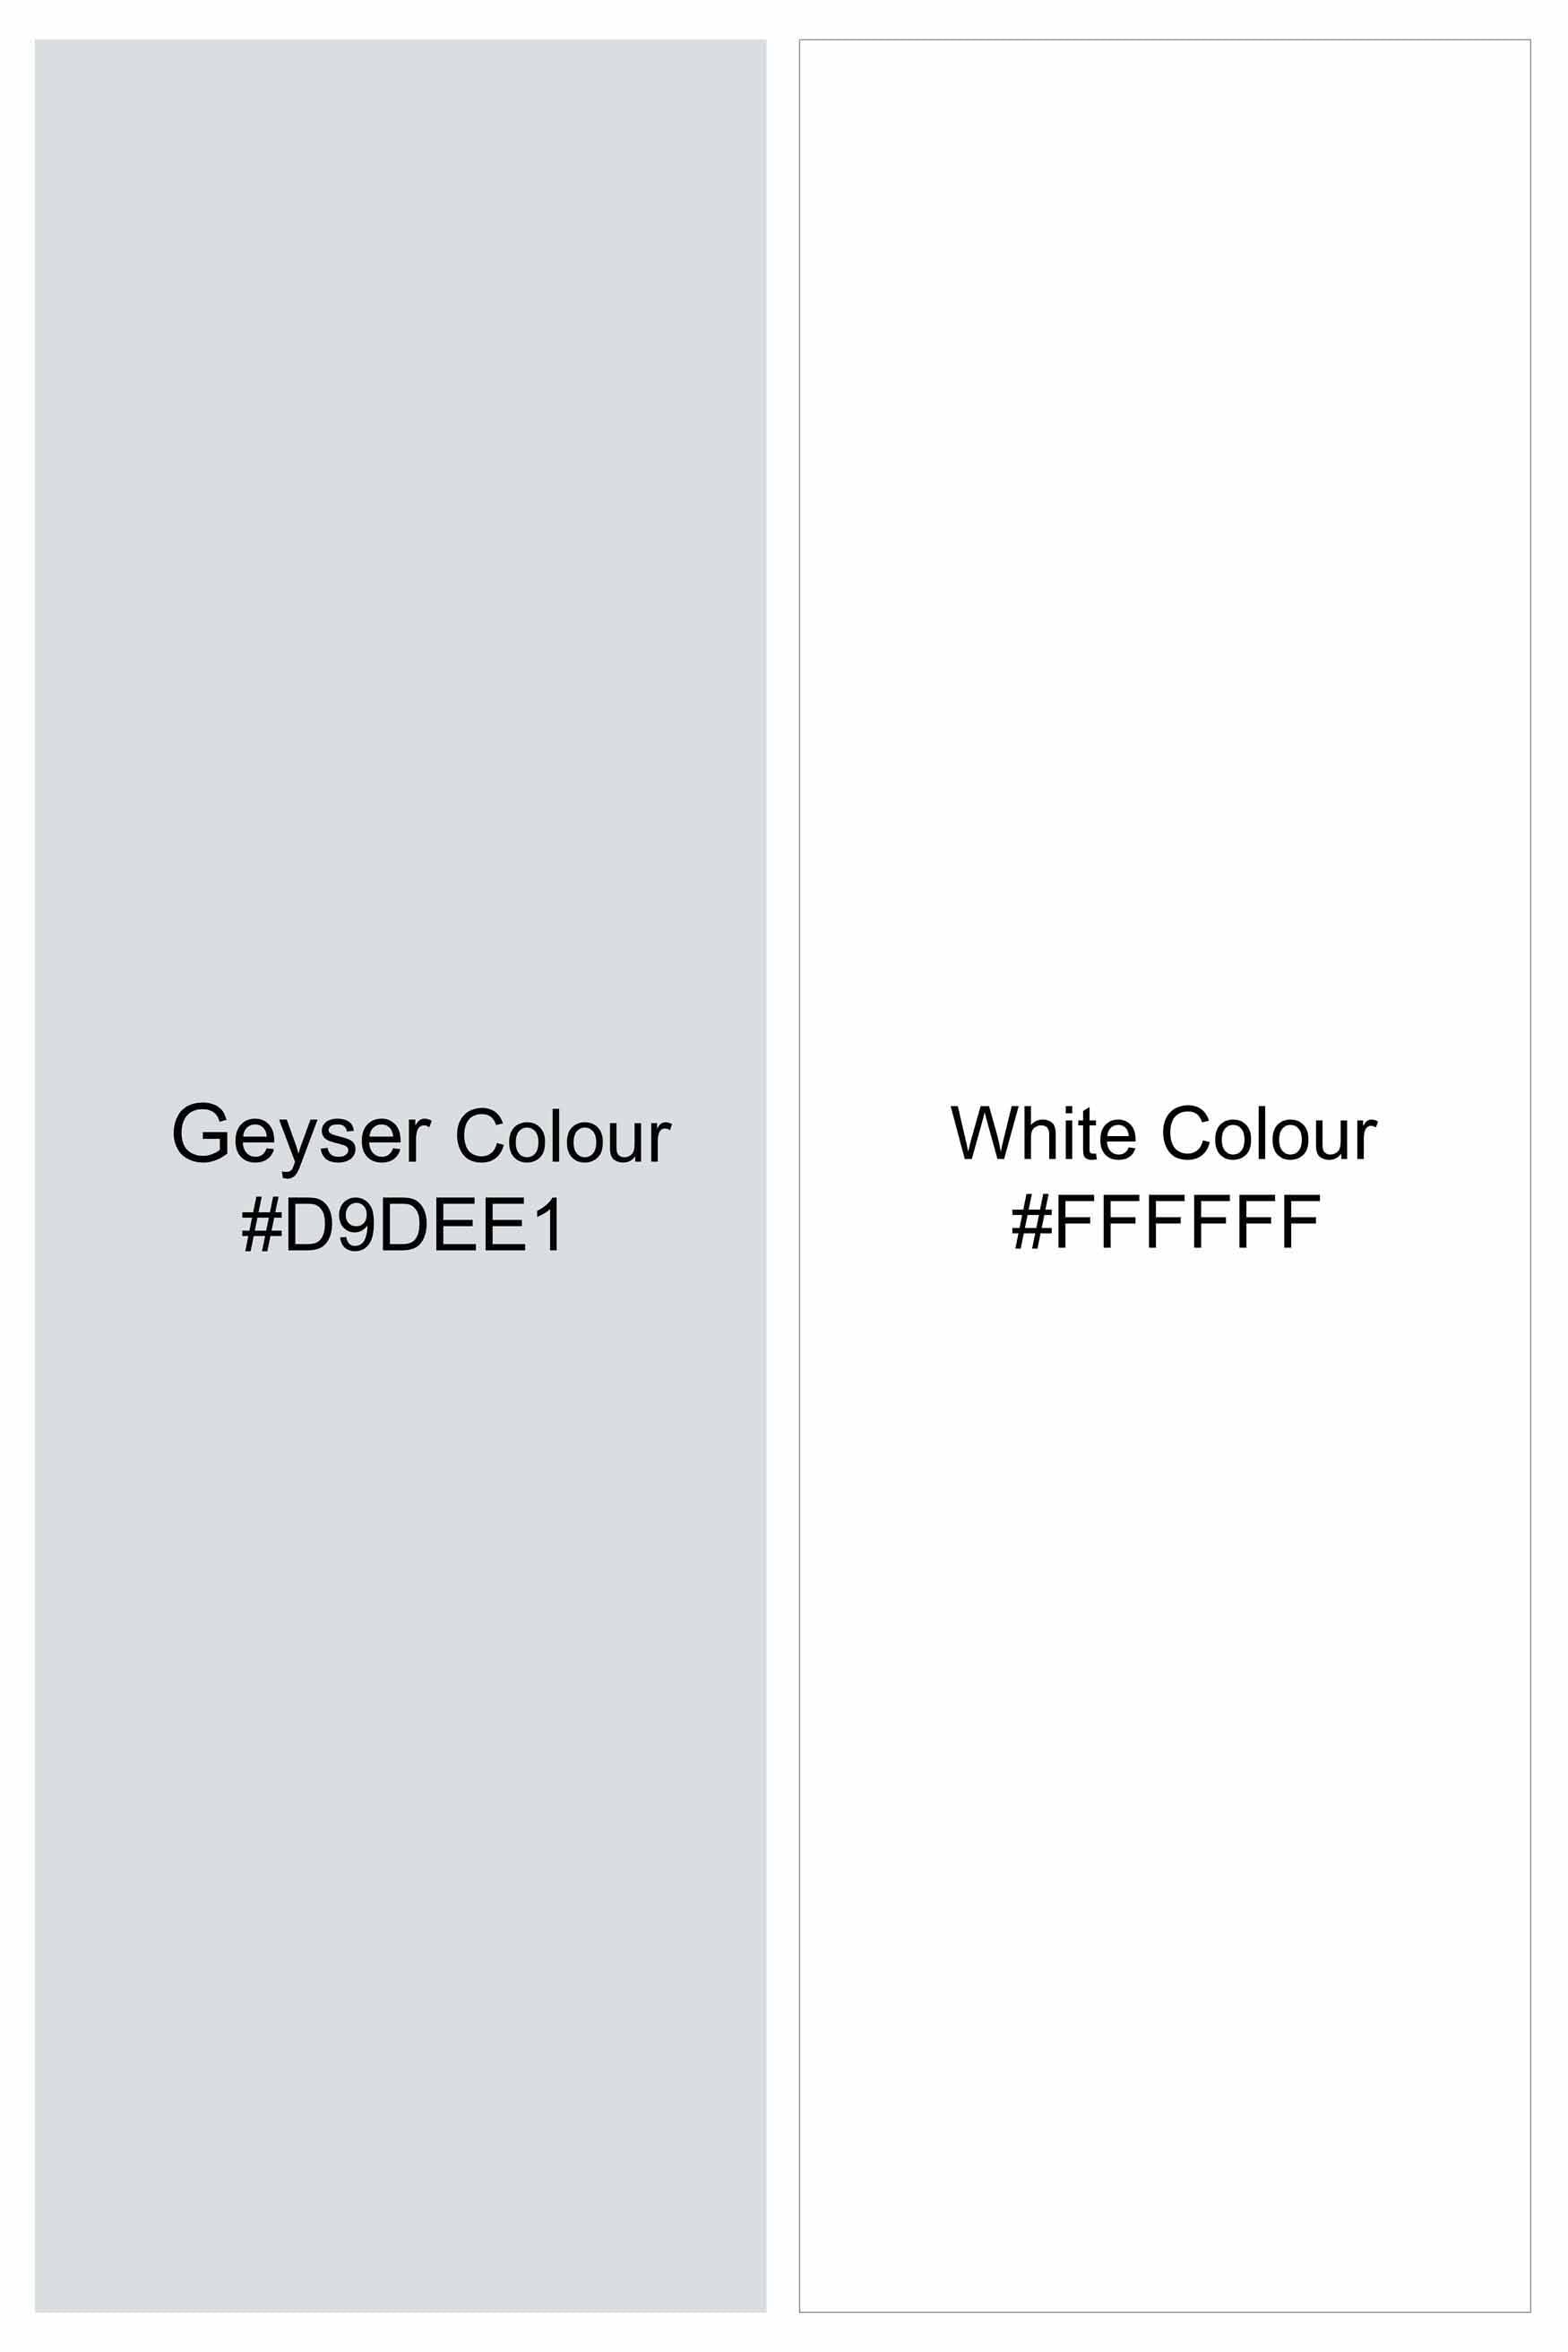 Geyser Gray and White Dobby Textured Premium Giza Cotton Shirt 11461-M-38, 11461-M-H-38, 11461-M-39, 11461-M-H-39, 11461-M-40, 11461-M-H-40, 11461-M-42, 11461-M-H-42, 11461-M-44, 11461-M-H-44, 11461-M-46, 11461-M-H-46, 11461-M-48, 11461-M-H-48, 11461-M-50, 11461-M-H-50, 11461-M-52, 11461-M-H-52